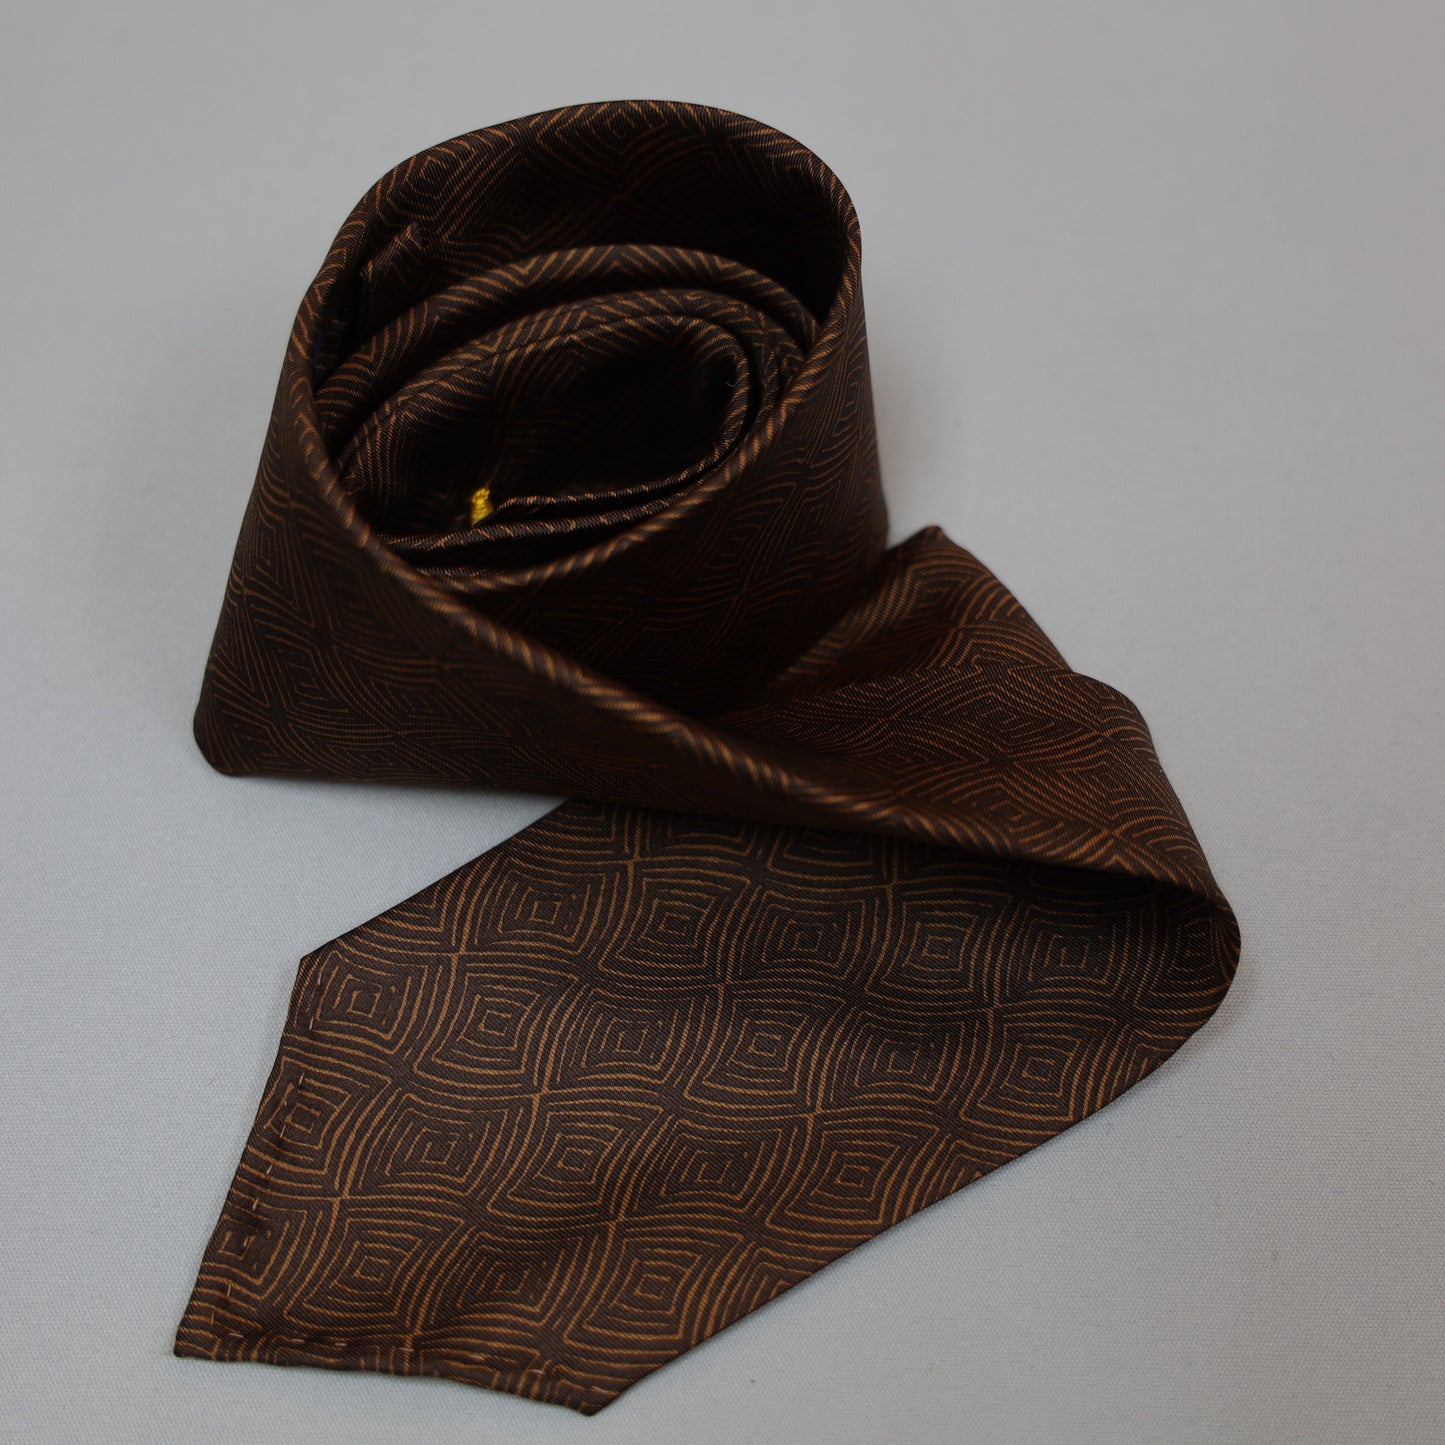 Handmade Vintage 7-Fold Tie